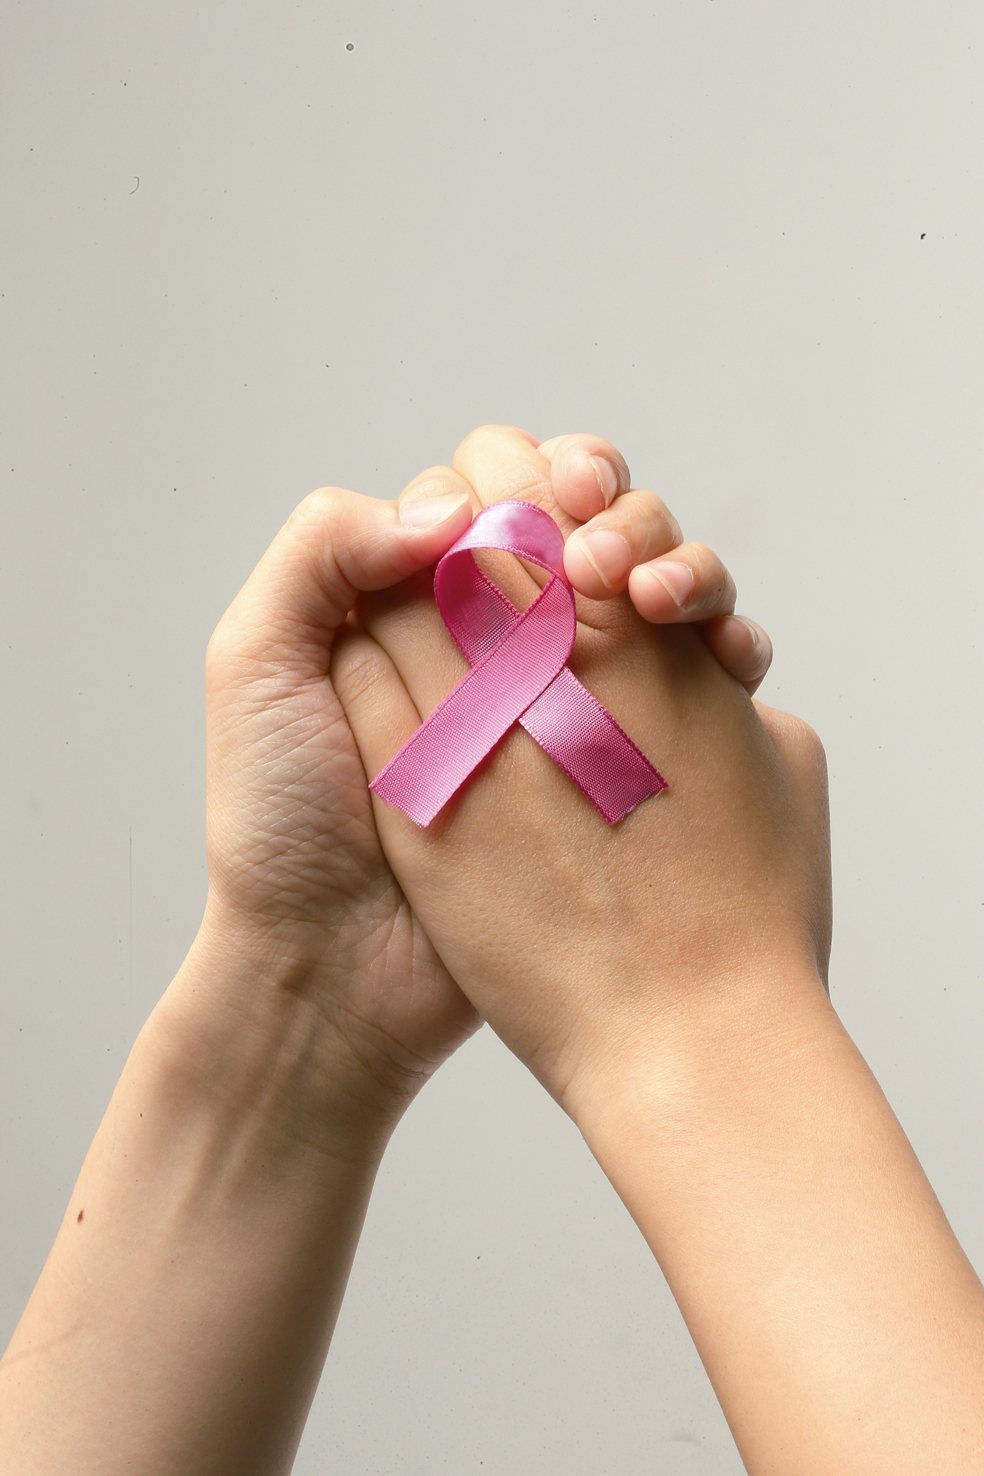 乳癌轉移是病人惡夢，林口長庚乳癌團隊長期追蹤1千多名乳癌患者，分析發現腦轉移病人存活期最短，平均7.5個月，其次是肝、肋膜、肺及骨轉移。當轉移部位超過三處、術後2年內復發、年齡逾70歲、三陰性等，超過半數患者會在2年內死亡。但醫師強調，高惡性乳癌只要配合醫師治療